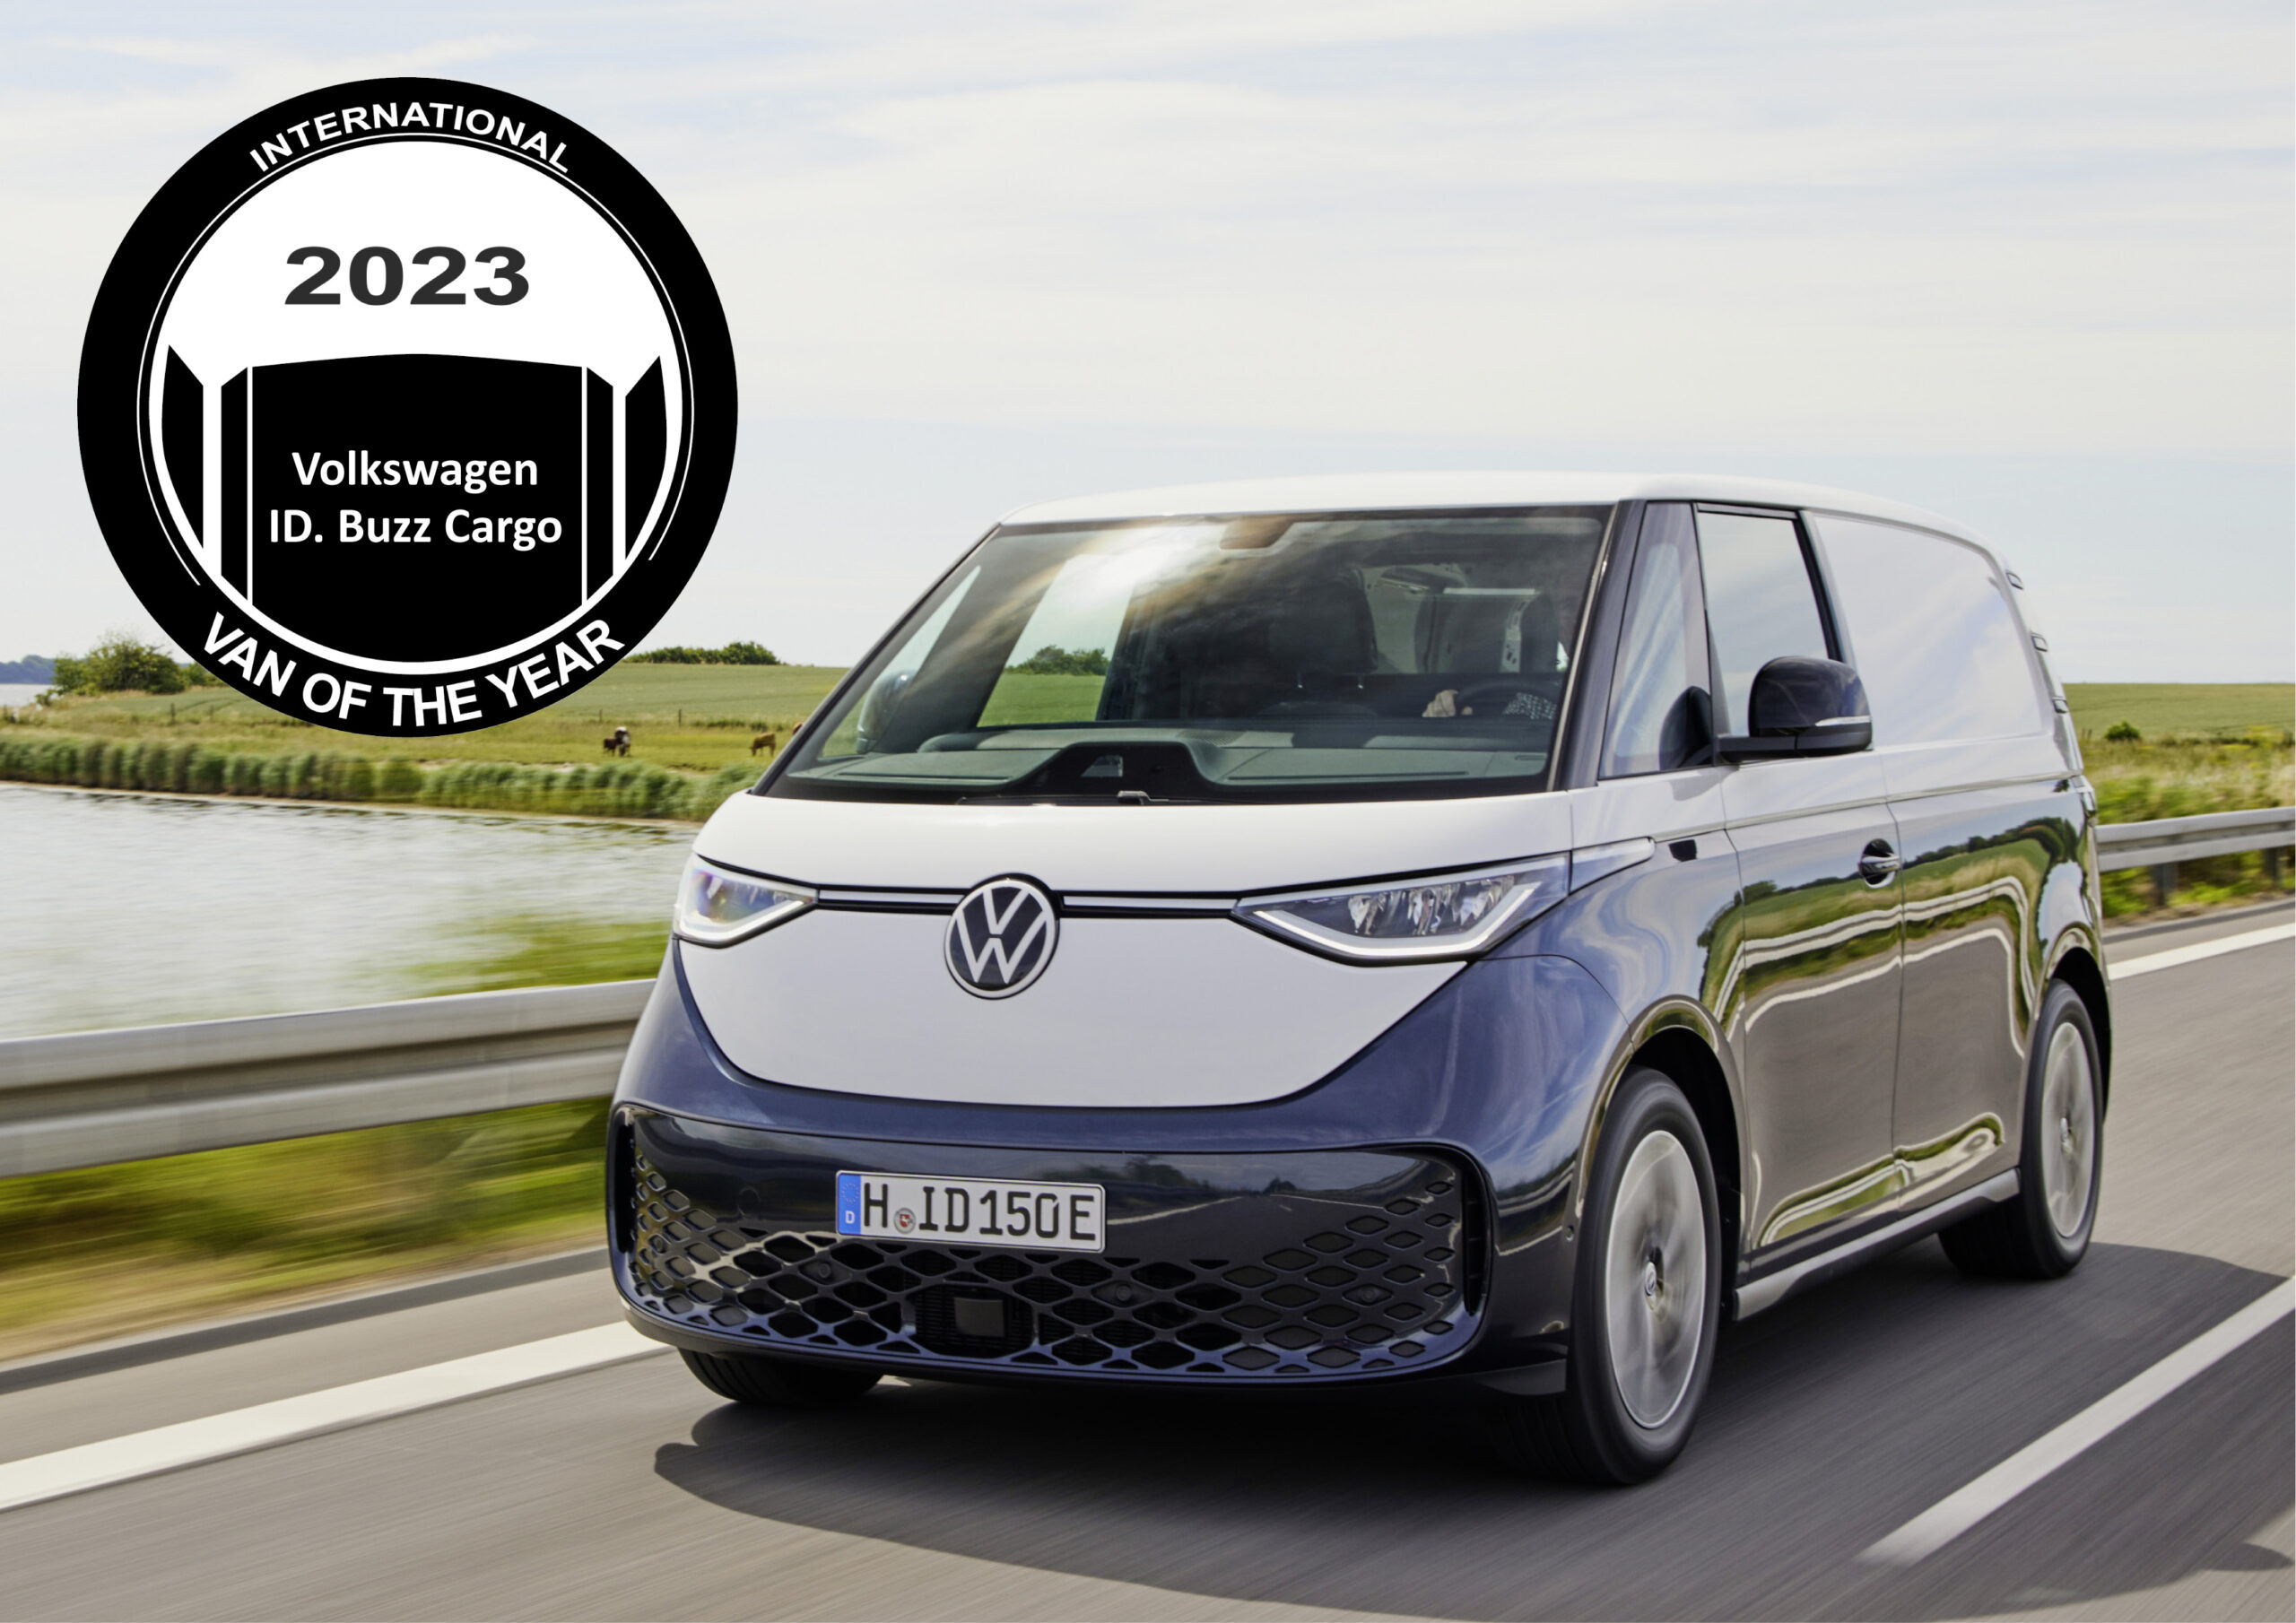 ￼Van of the Year 2023 : Volkswagen ID. Buzz